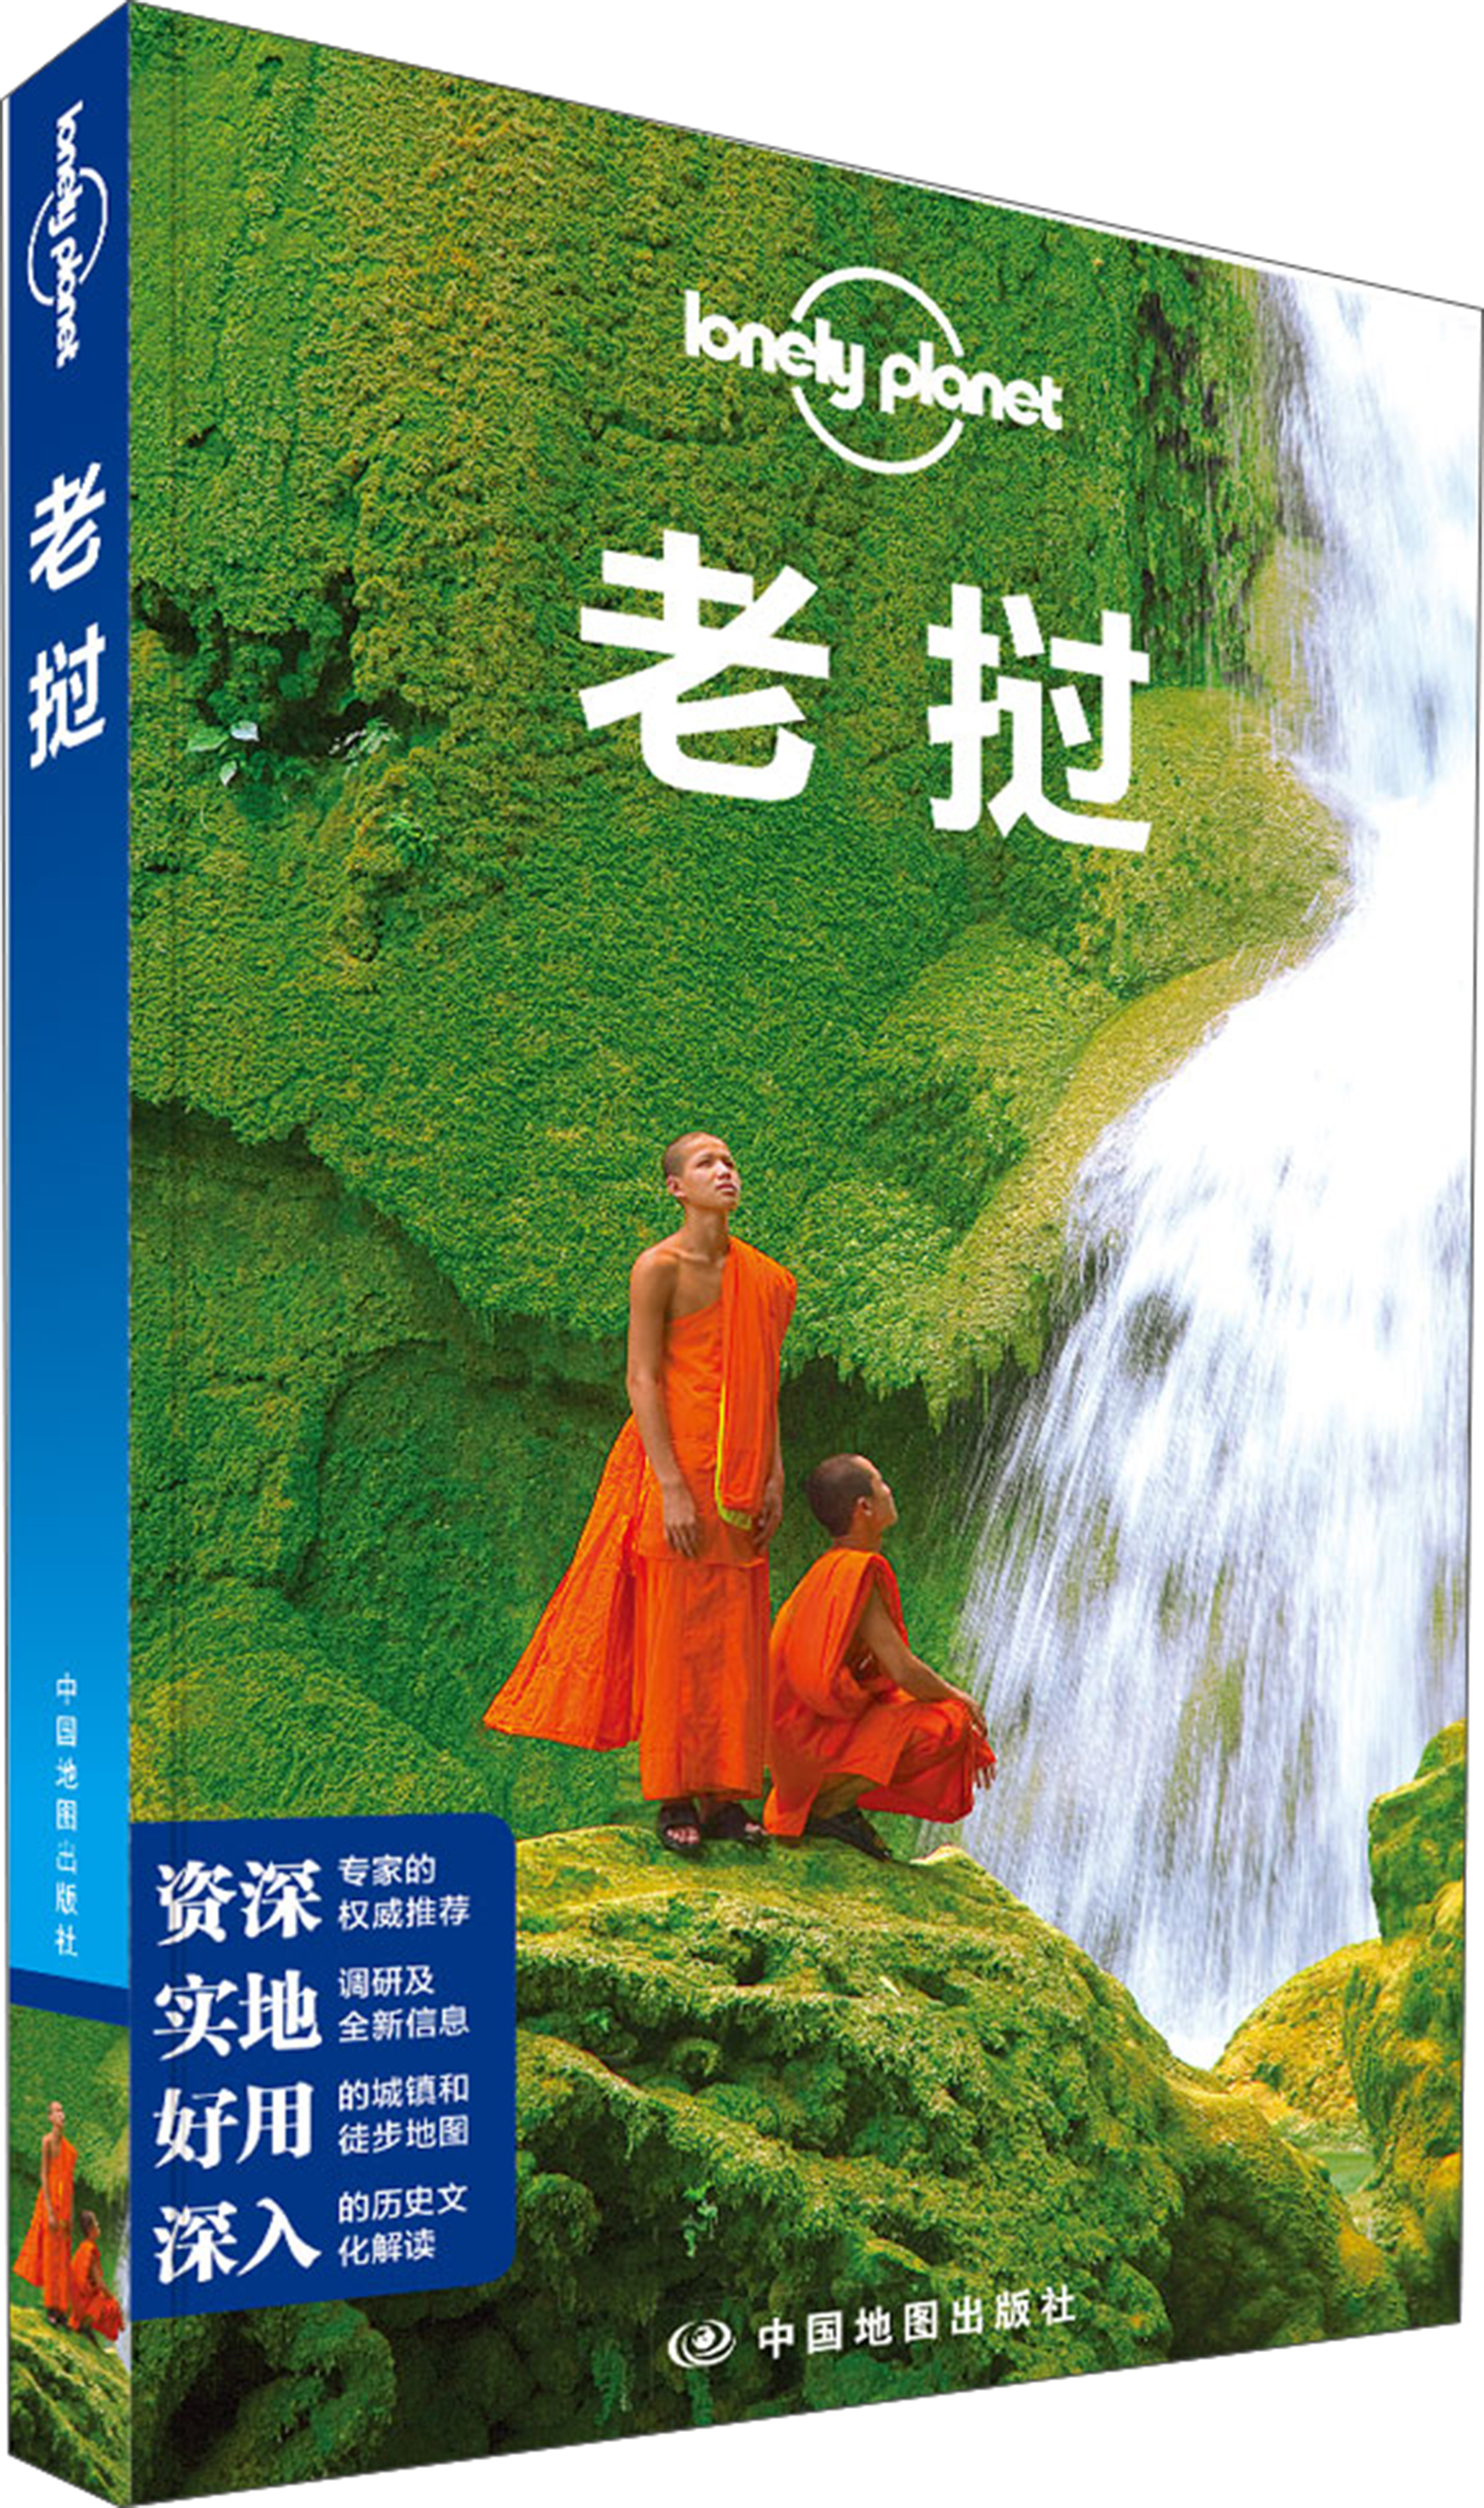 孤独星球Lonely Planet旅行指南系列：老挝 pdf格式下载